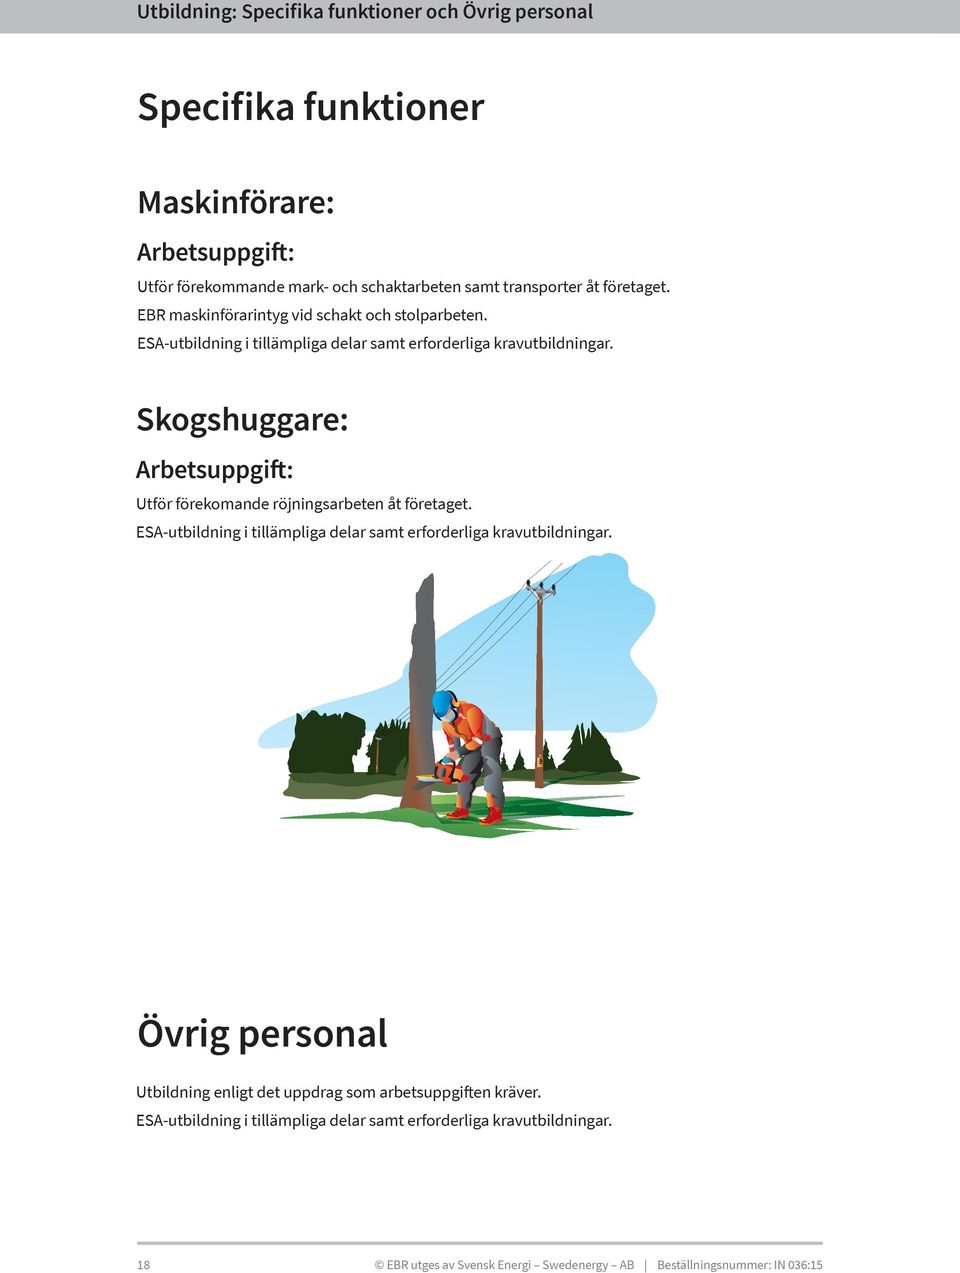 Skogshuggare: Arbetsuppgift: Utför förekomande röjningsarbeten åt företaget. ESA-utbildning i tillämpliga delar samt erforderliga kravutbildningar.